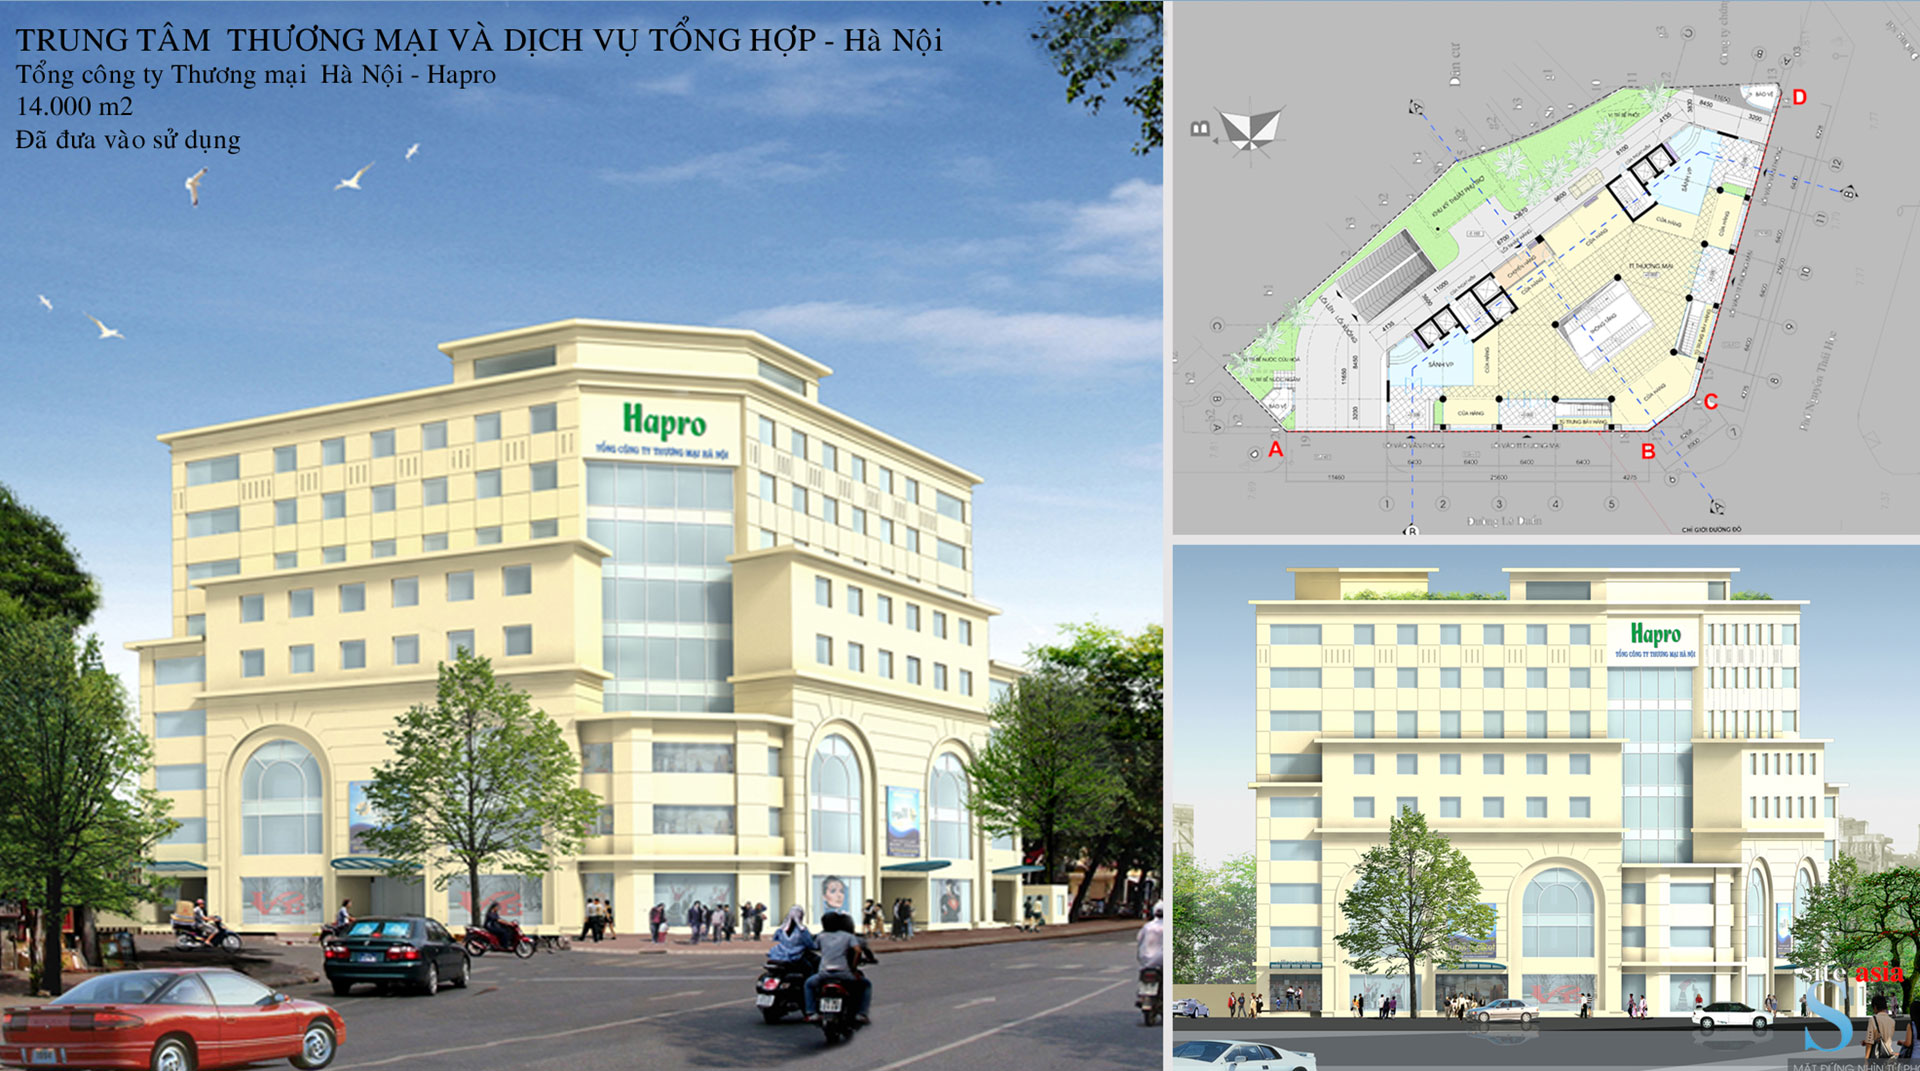 Hapro Commercial Center - Le Duan, Ha Noi